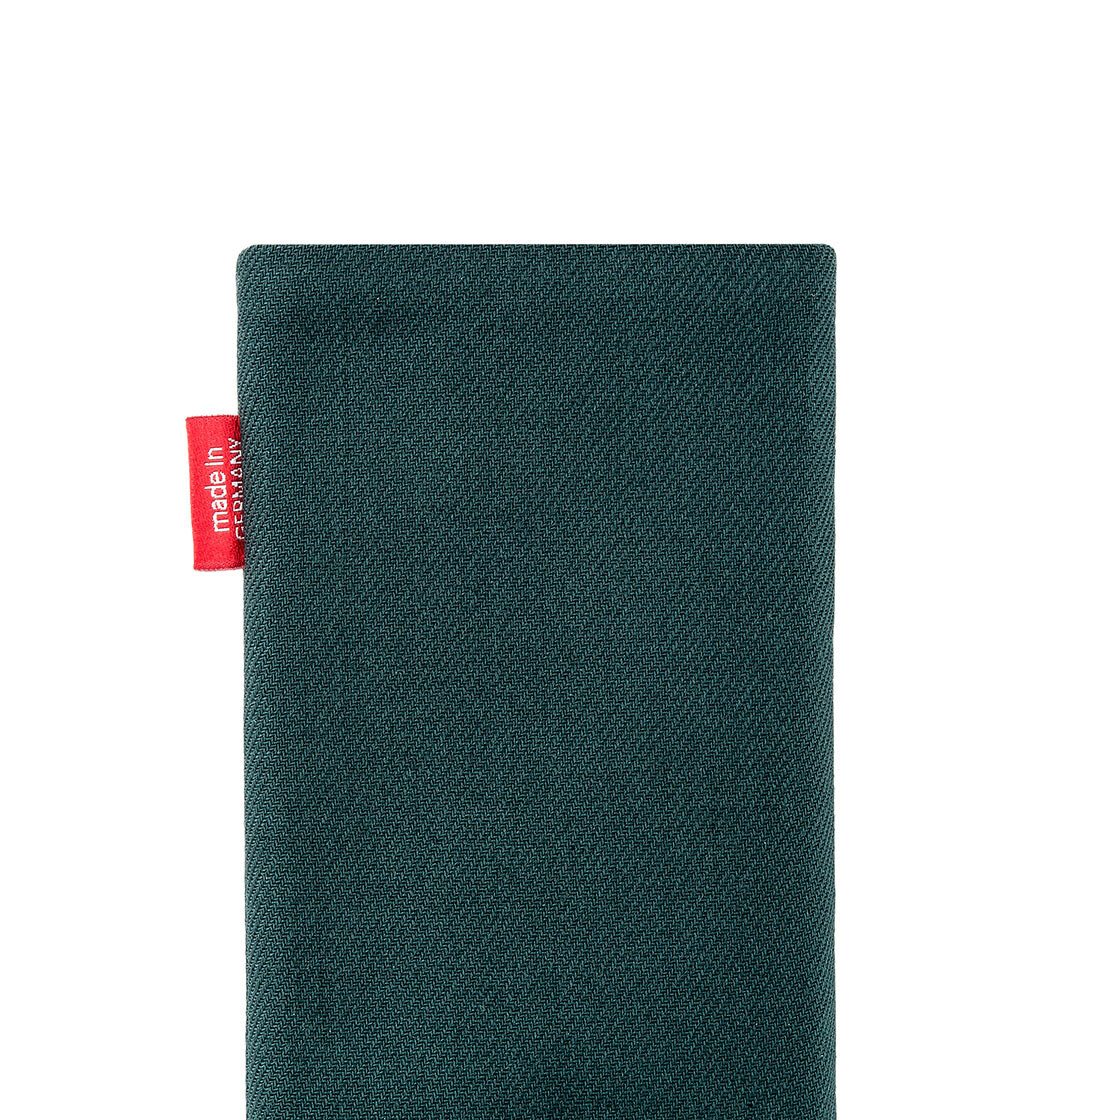 fitBAG Rave Smaragd Handytasche Tasche aus Textil-Stoff mit Microfaserinnenfutter für Nokia 7 Plus Hülle mit Reinigungsfunktion Made in Germany 